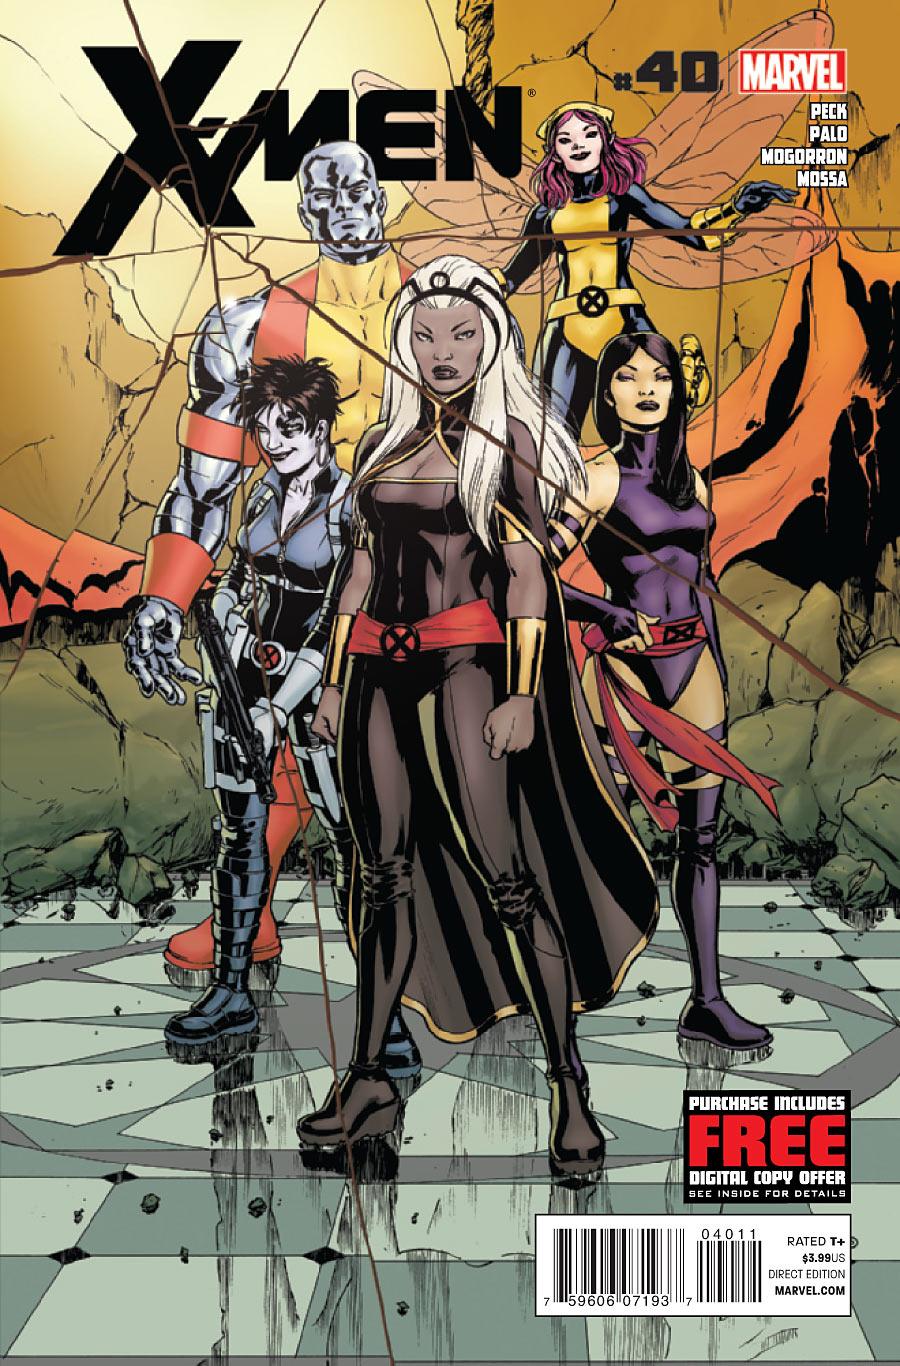 X-Men Vol. 3 #40